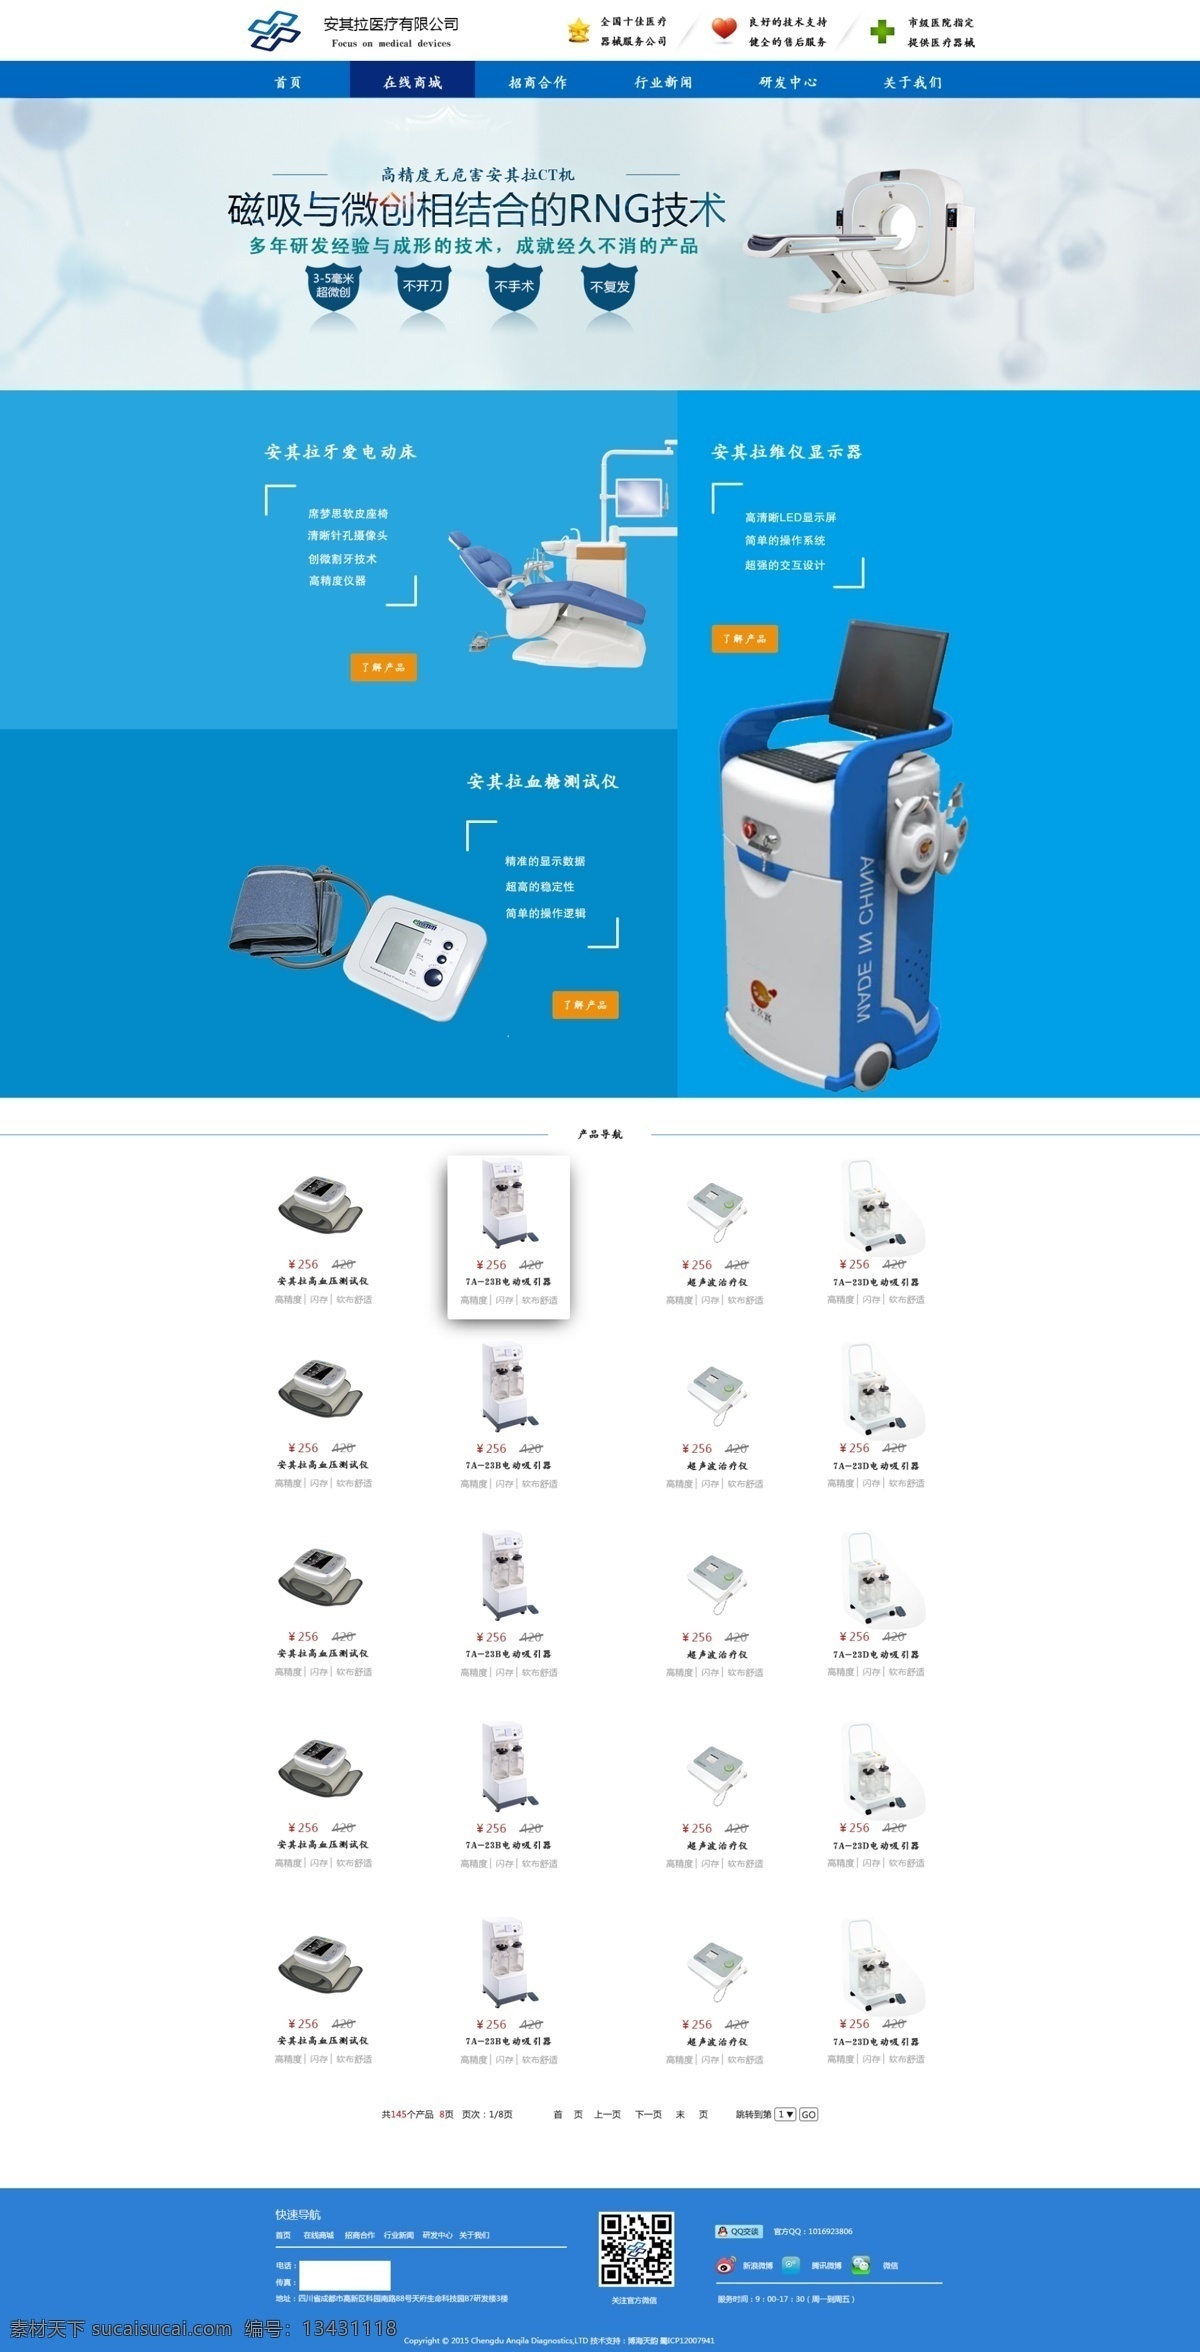 企业 在线商城 医疗器械 蓝色 网页设计 产品